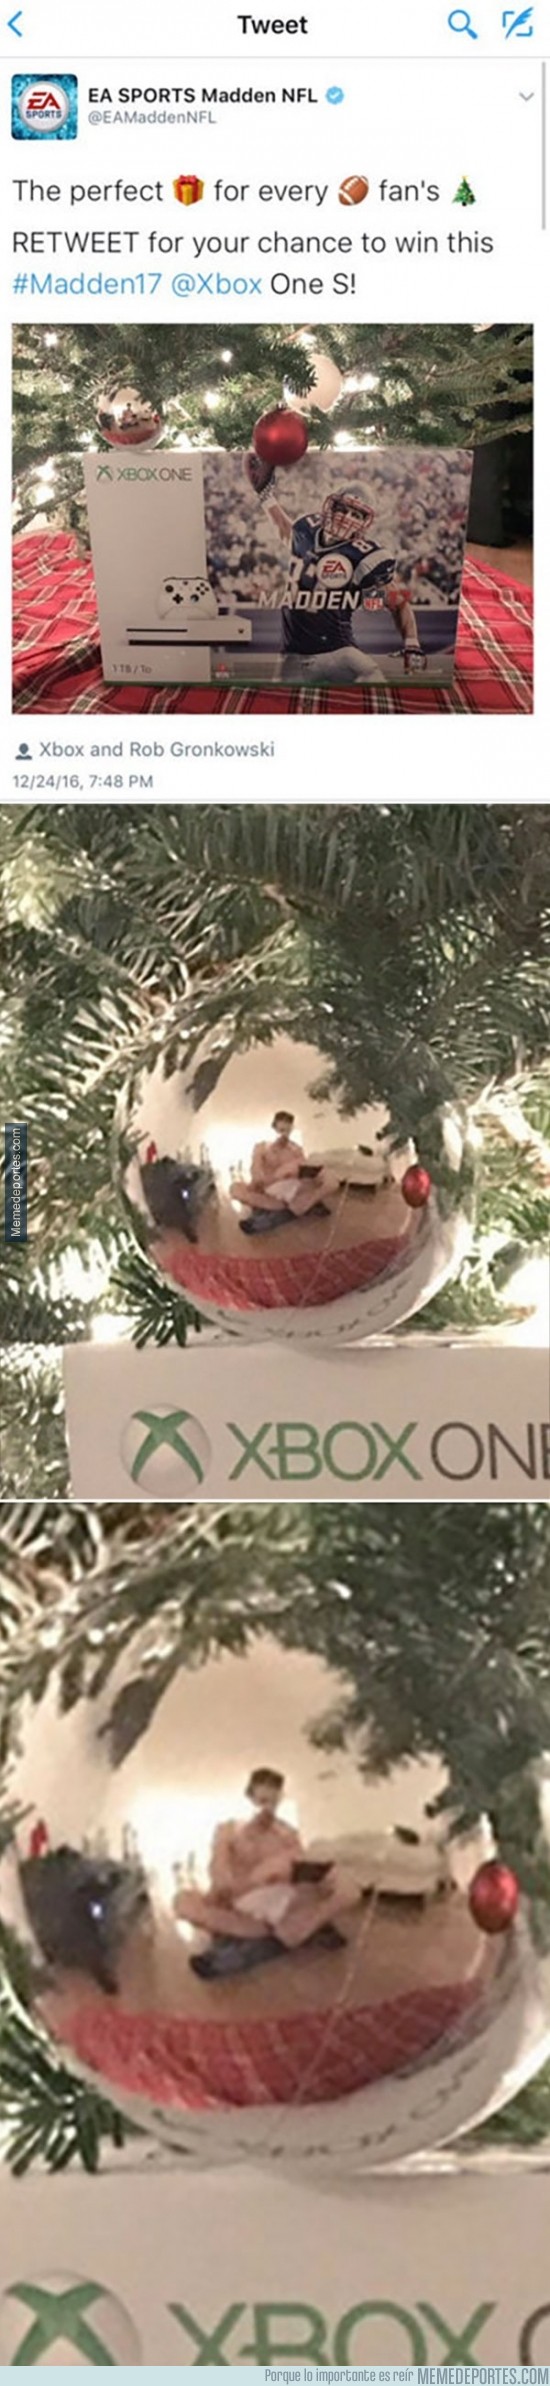 935200 - Community oficial de EA Sports sube una foto sin querer de él desnudo para un sorteo de una XBOX